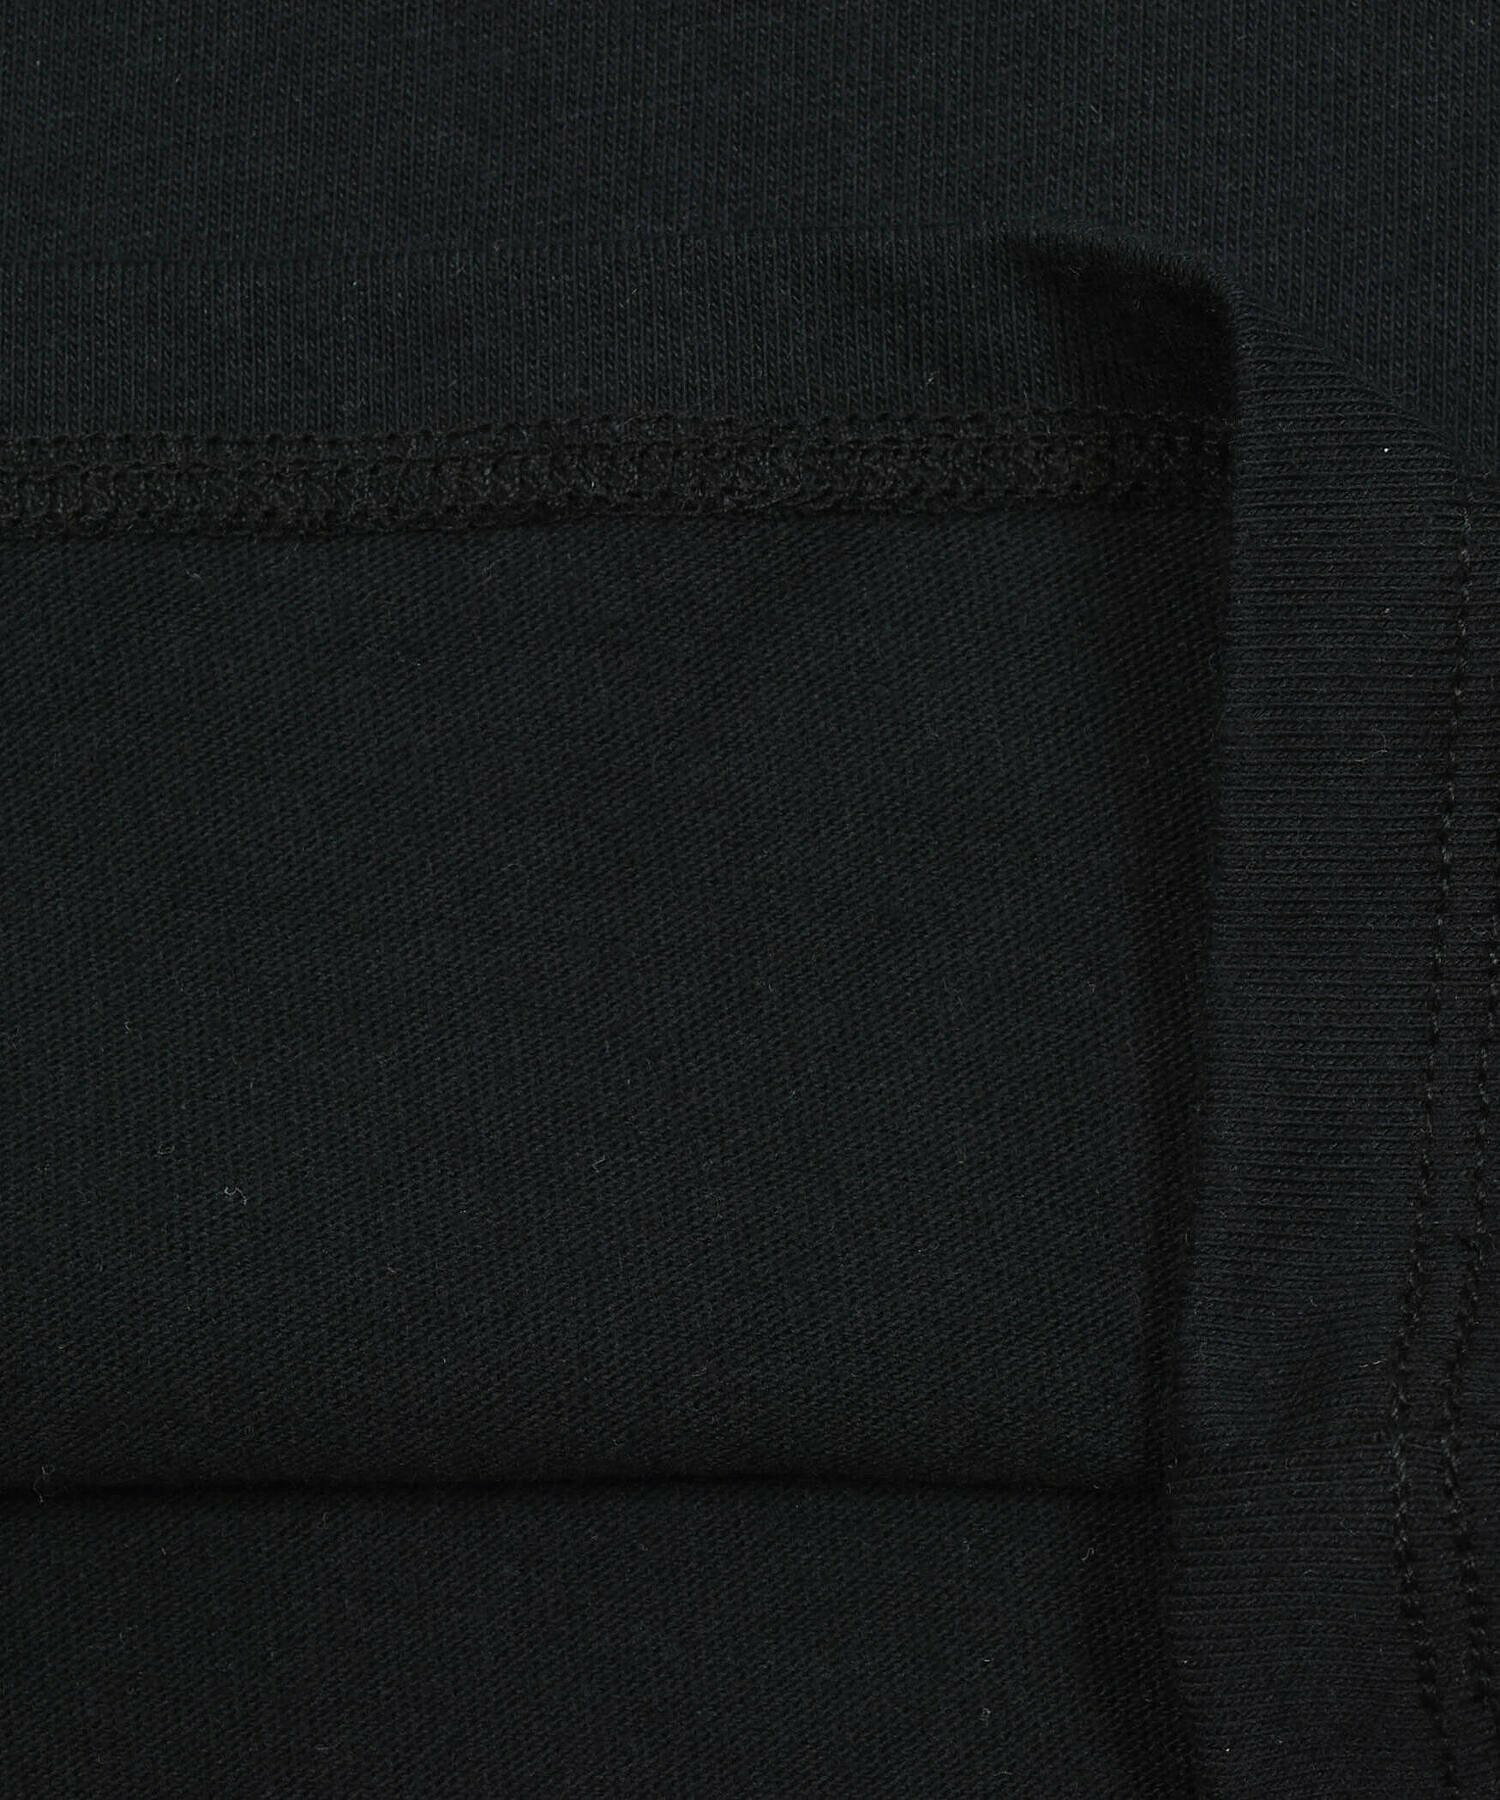 【 ニコ☆プチ 掲載 】ベルト付きキャミワンピース&Tシャツセット(130~160cm)